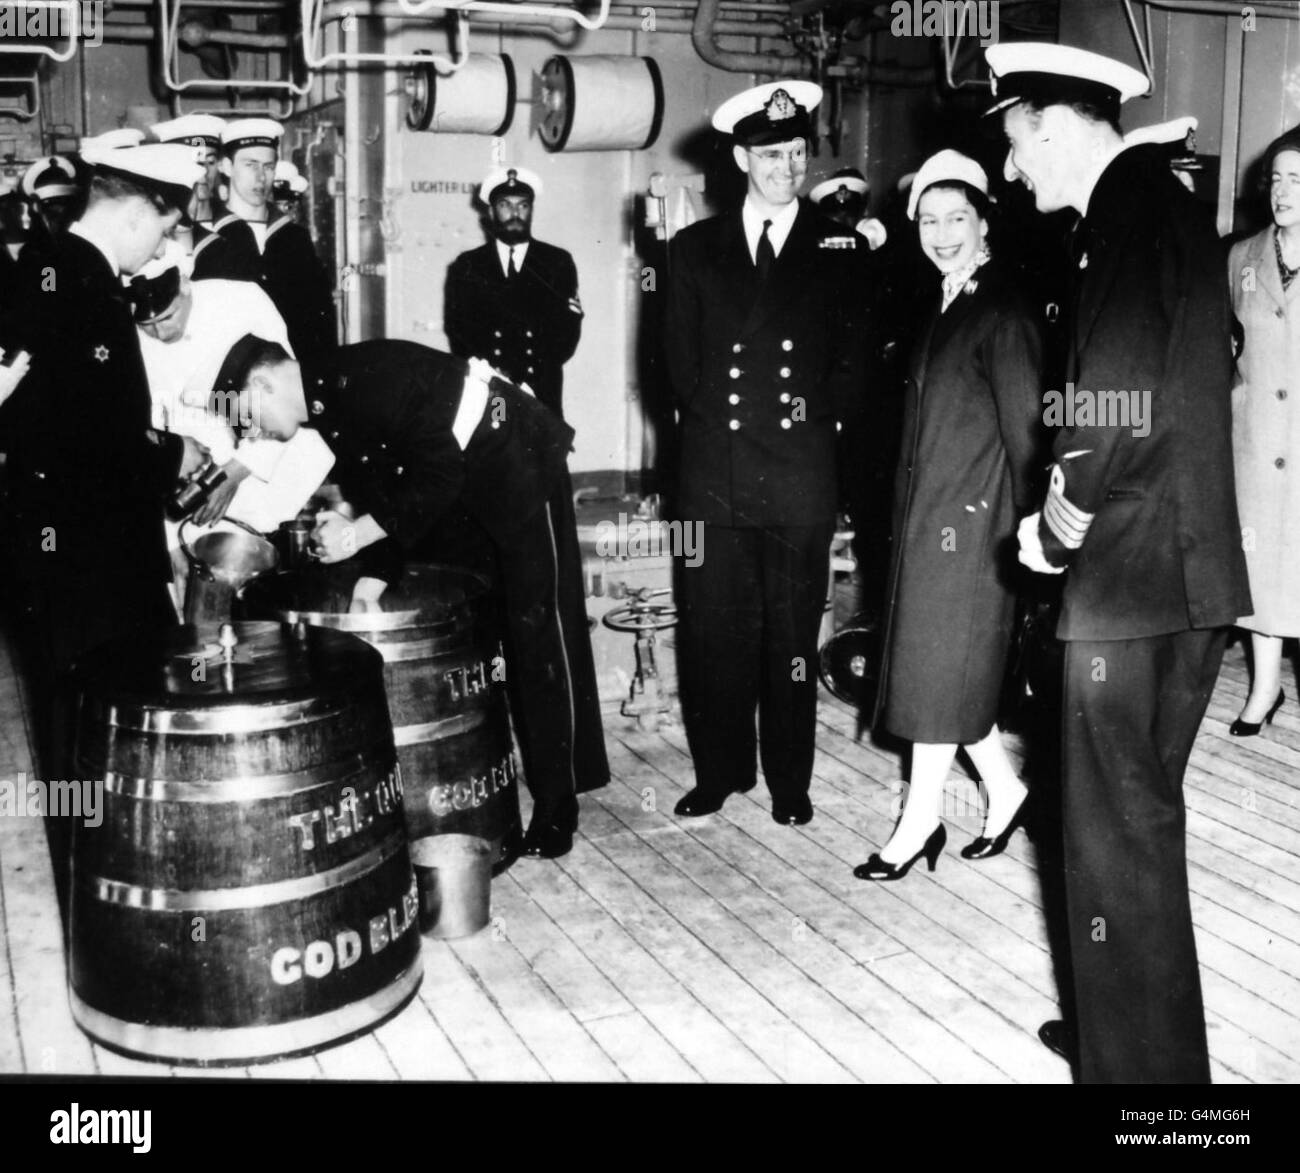 Königin Elizabeth II lächelt mit den Offizieren, als sie die traditionelle Rum-Ausgabe an Bord des Flugzeugträgers Eagle vor Weymouth, Dorset, beobachtet. Stockfoto